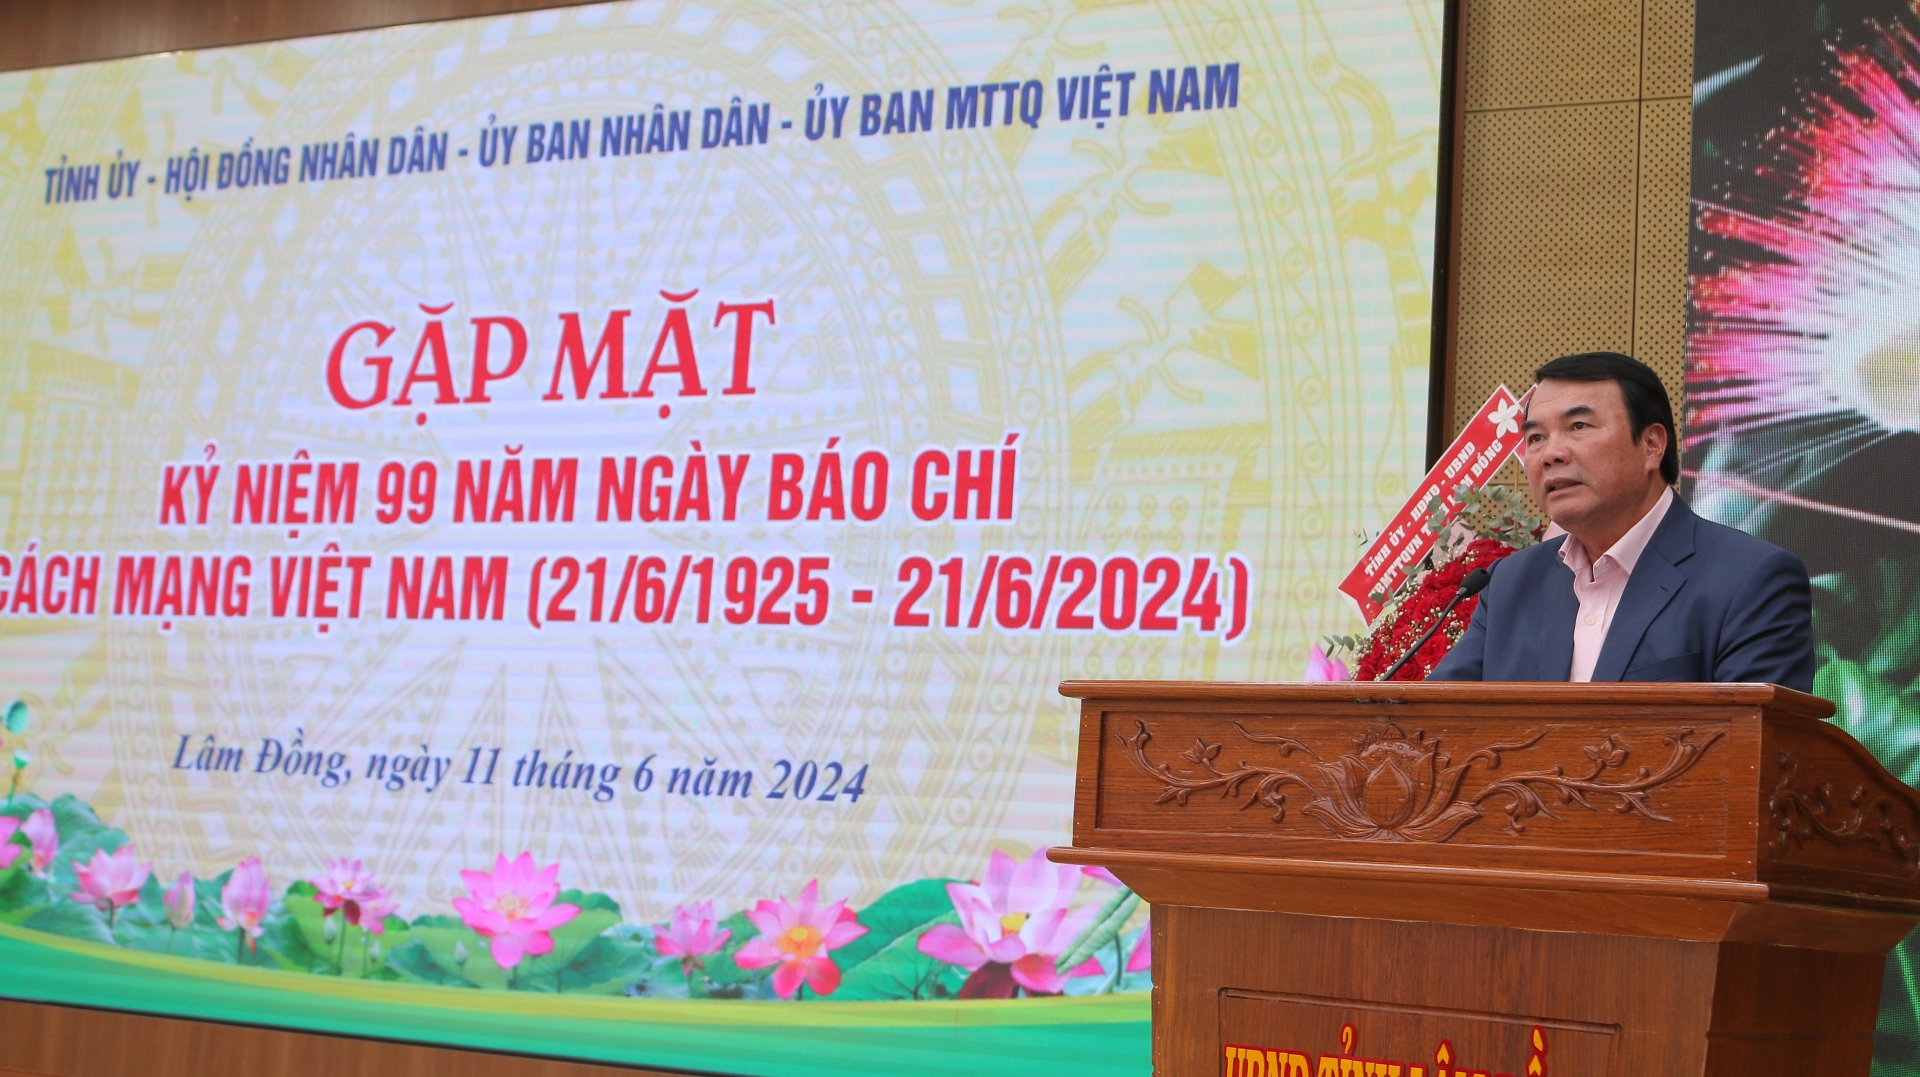 Phó Chủ tịch UBND tỉnh Lâm Đồng Phạm S gửi đến các nhà báo lời chúc mừng tốt đẹp nhất nhân dịp kỷ niệm Ngày Báo chí Cách mạng Việt Nam.